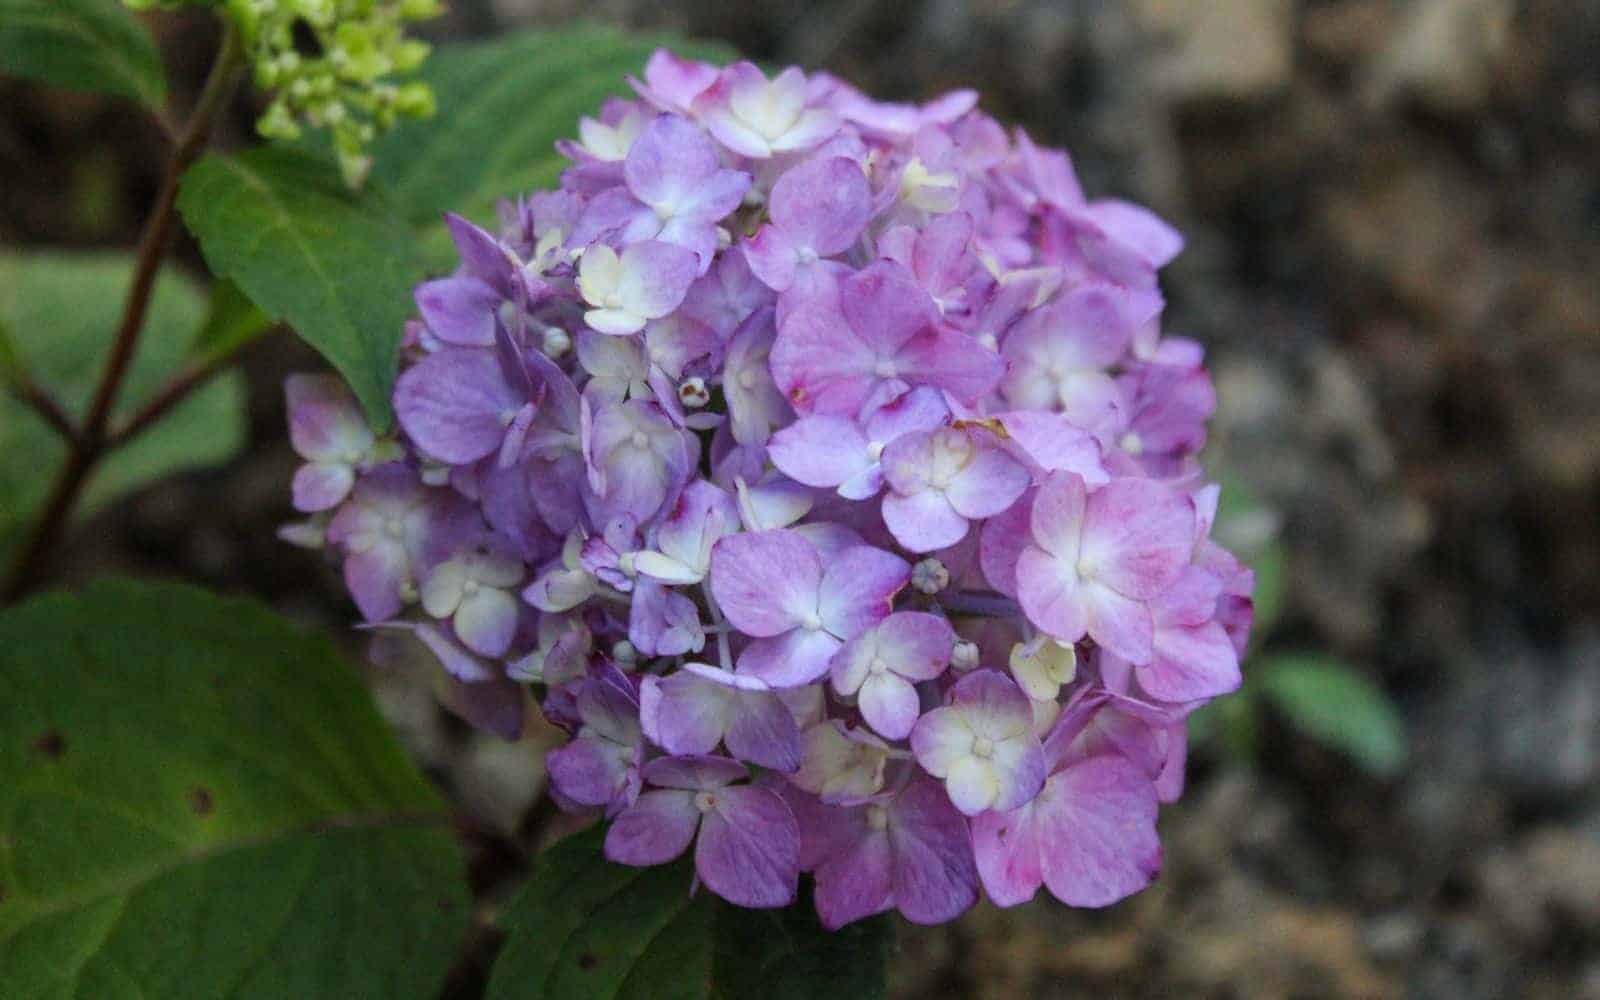 Bloomstruck hydrangea - purple